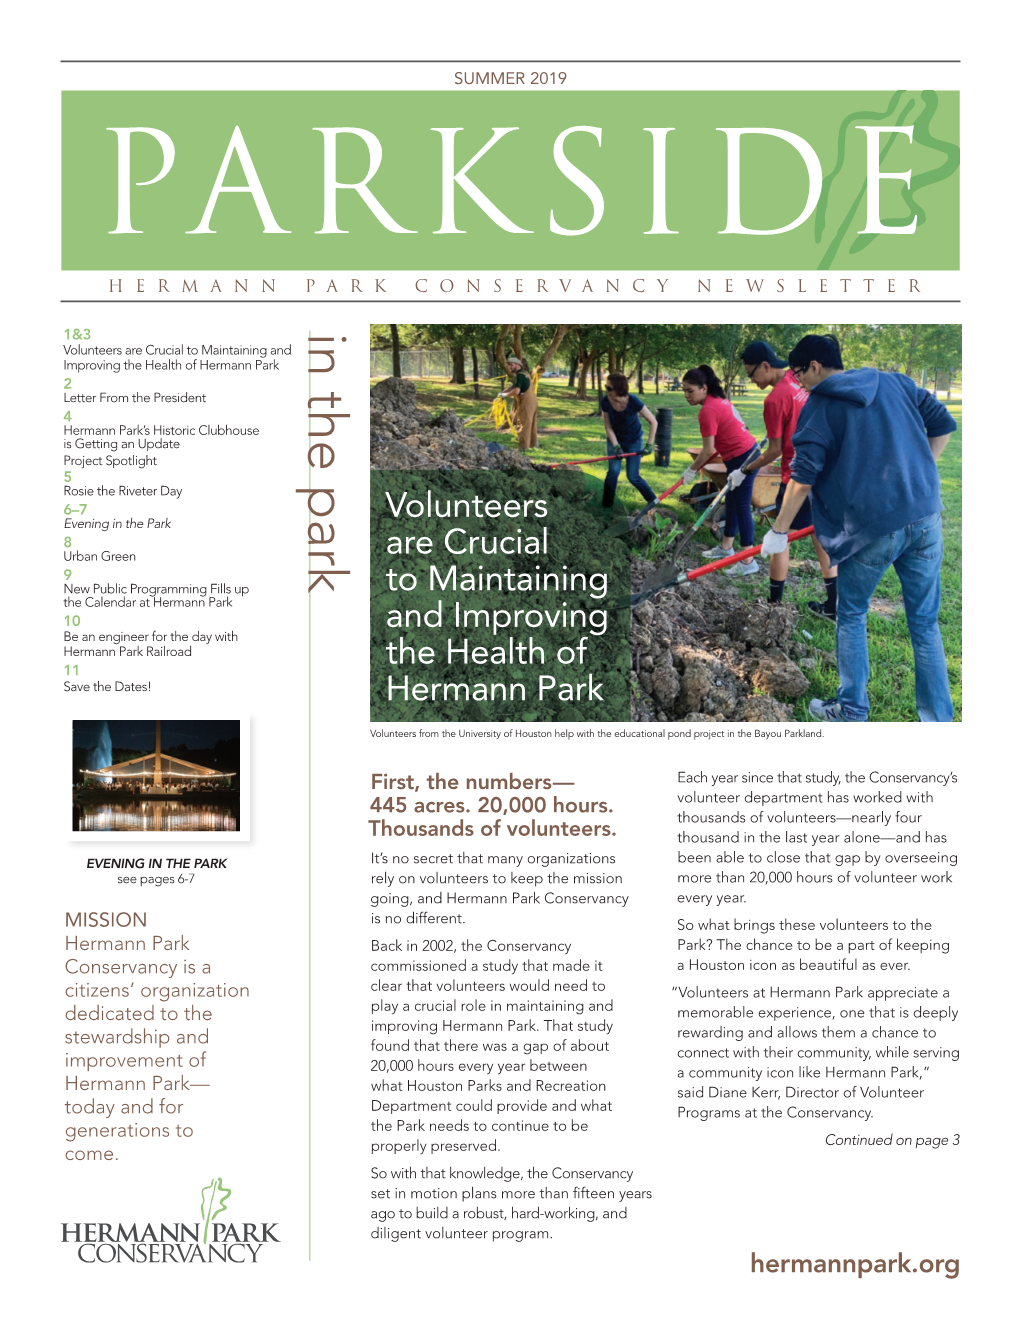 Summer 2019 Parkside Hermann Park Conservancy Newsletter